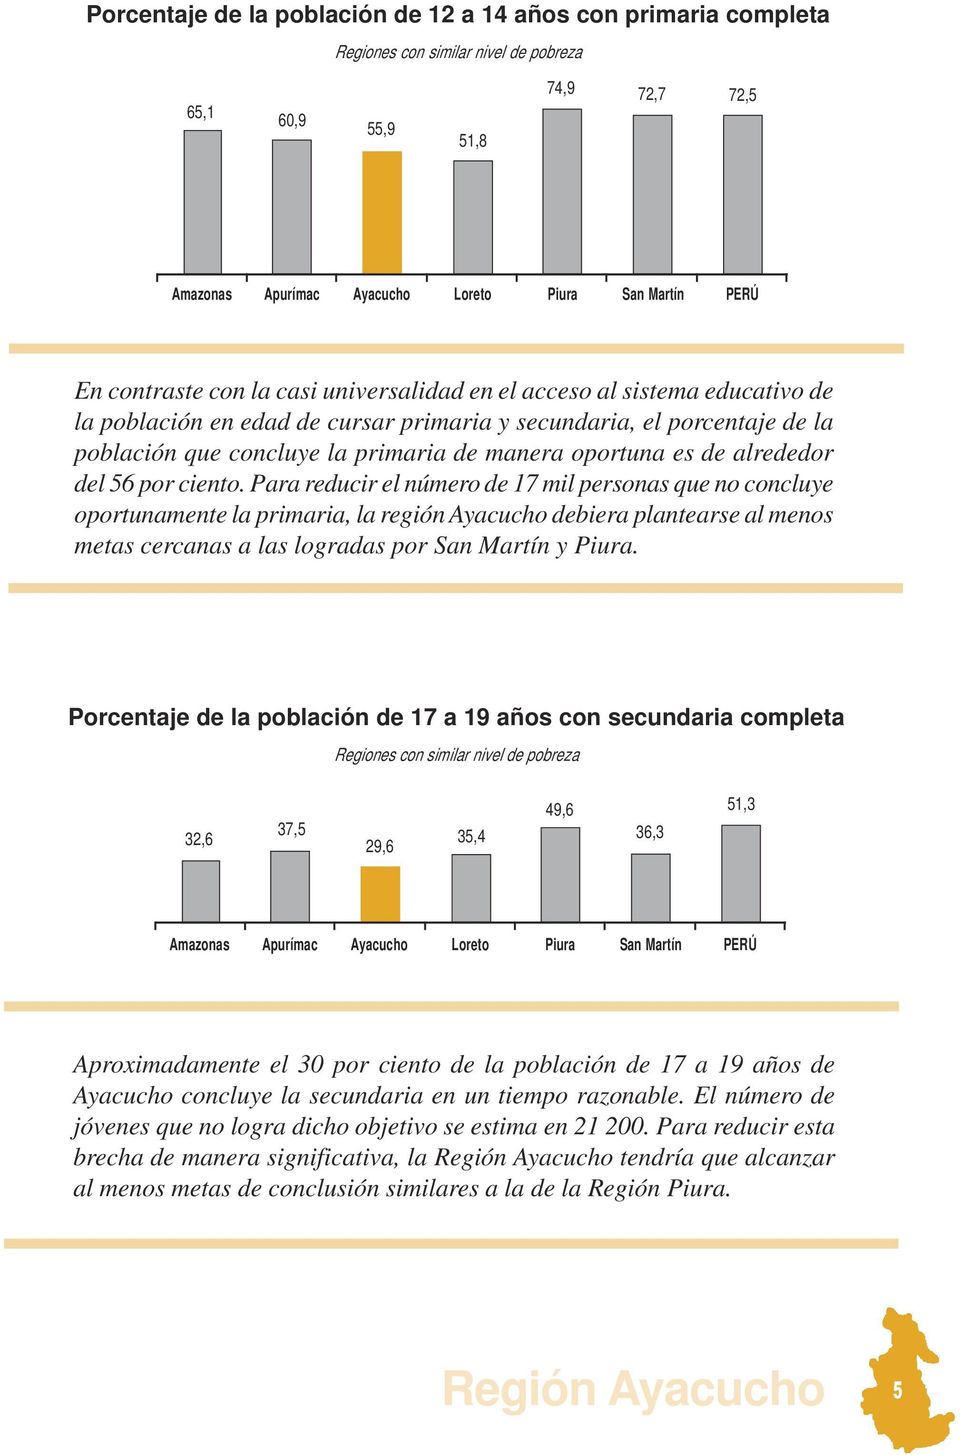 Para reducir el número de 17 mil personas que no concluye oportunamente la primaria, la región Ayacucho debiera plantearse al menos metas cercanas a las logradas por San Martín y Piura.